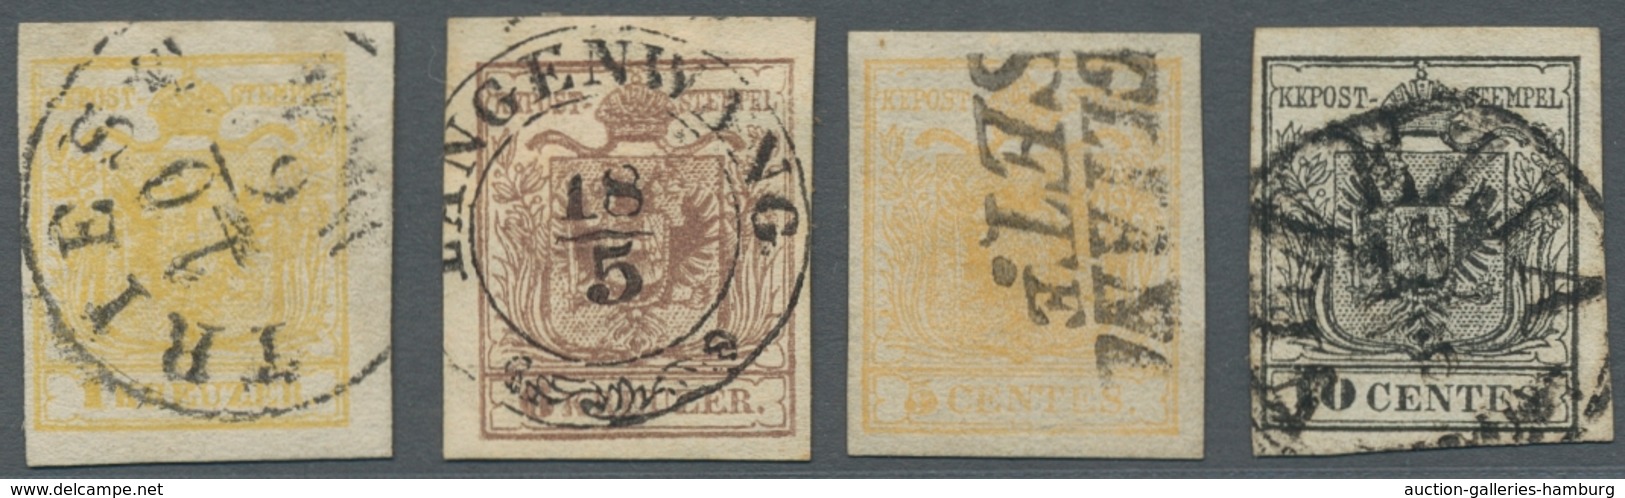 Österreich - Lombardei Und Venetien: 1850, Wappenausgabe 5 Und 10 Centes, Dazu Österreich Nr. 1 Mit - Lombardo-Venetien